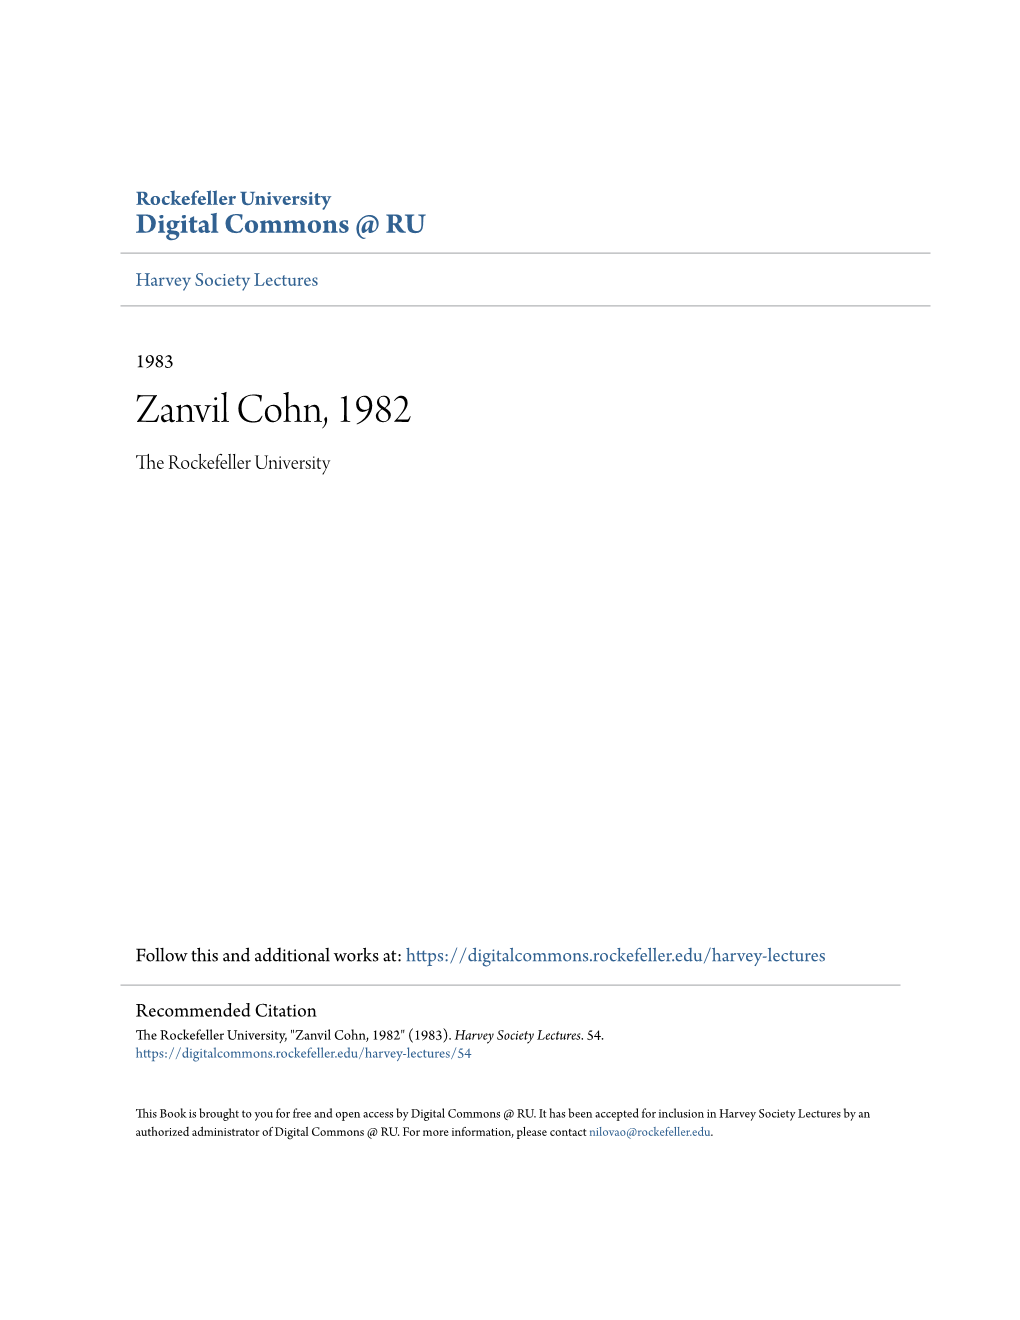 Zanvil Cohn, 1982 the Rockefeller University